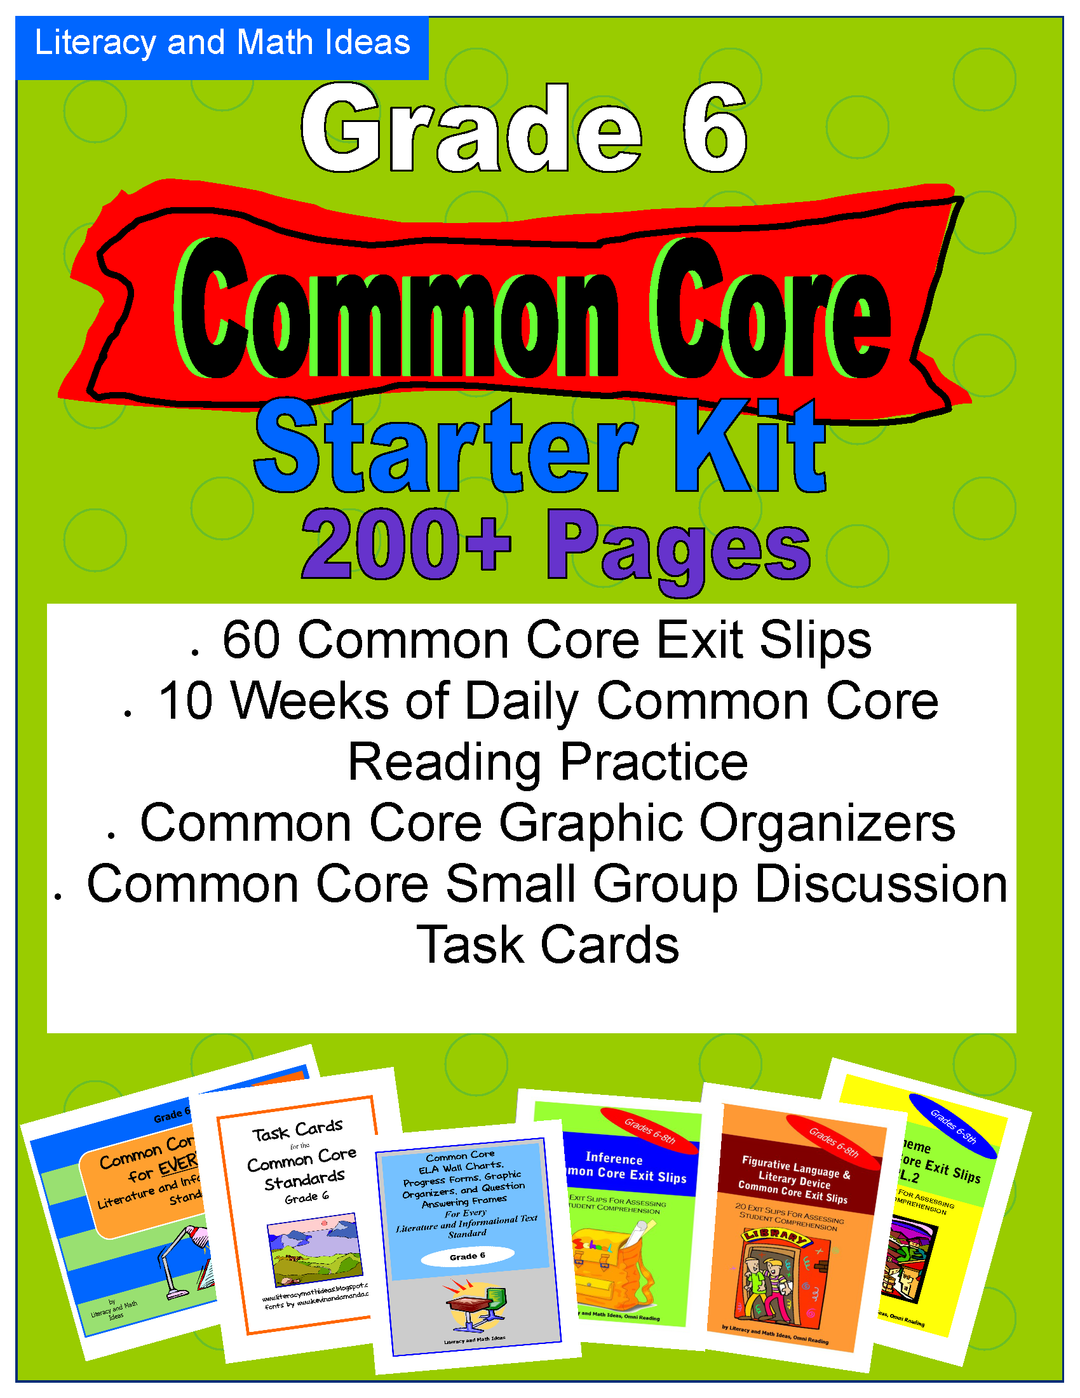 Common Core Grade 6 Starter Kit